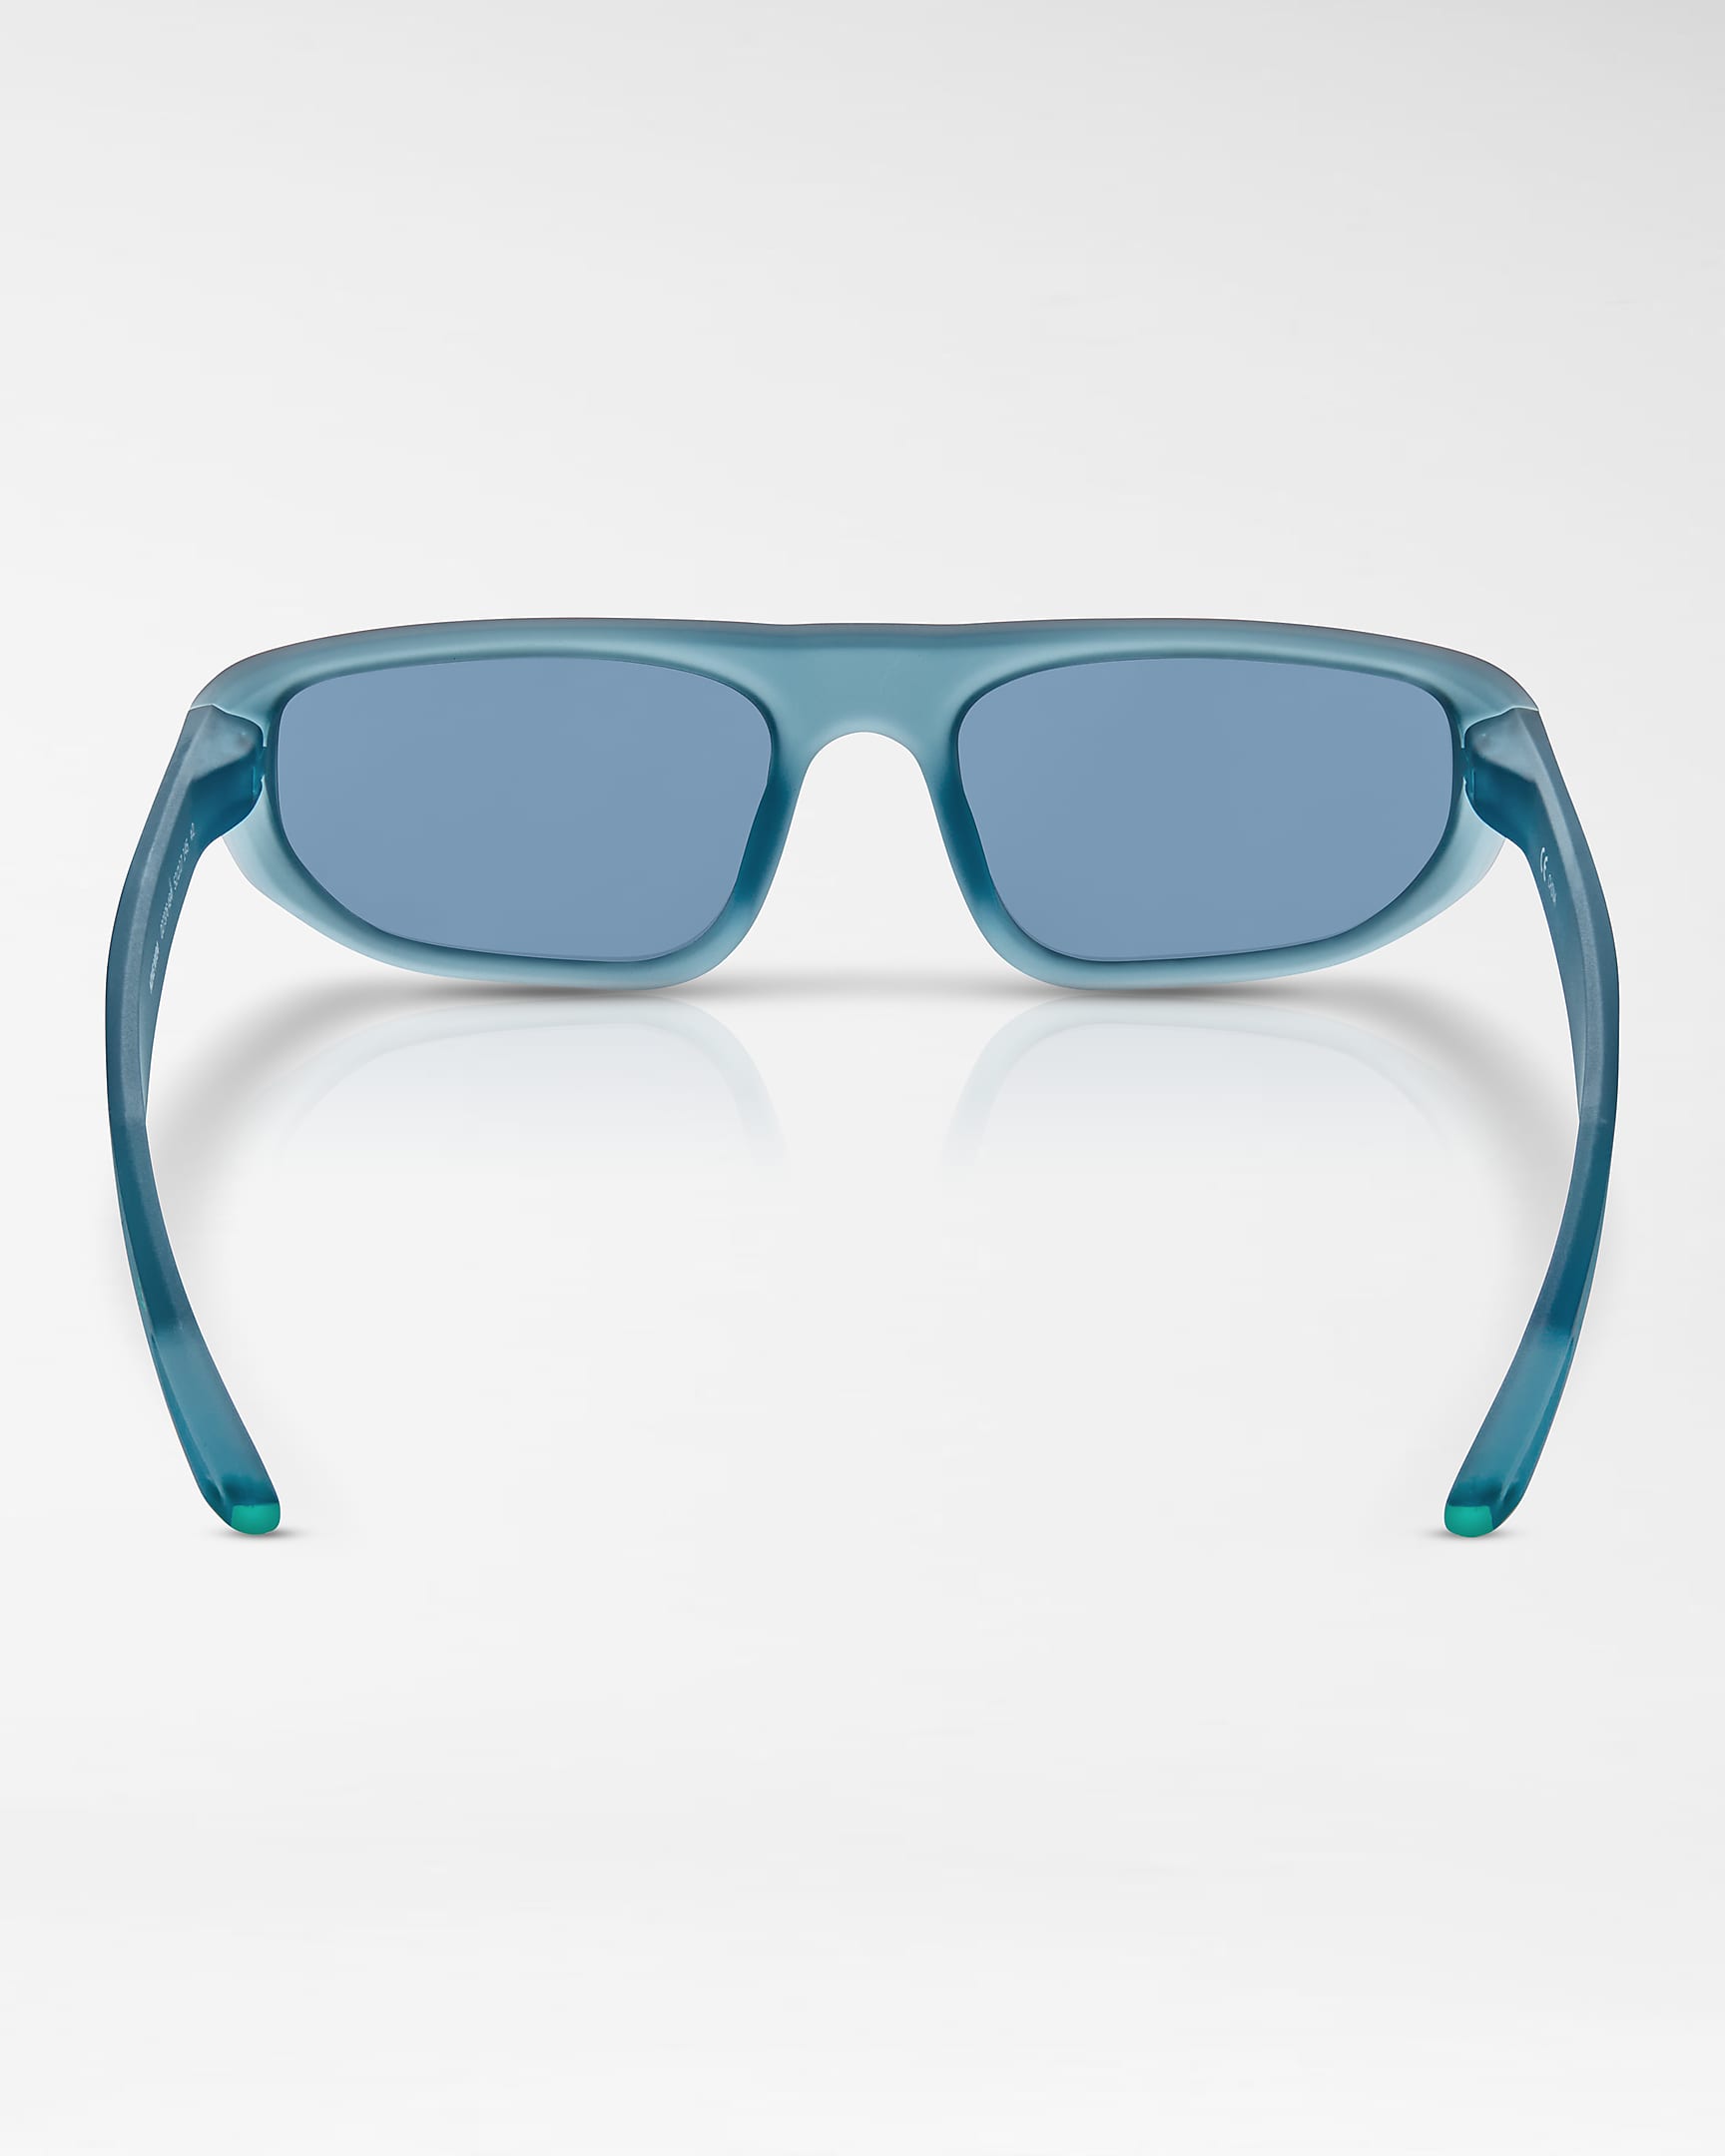 Nike NV04 Sunglasses - Worn Blue/Green Glow